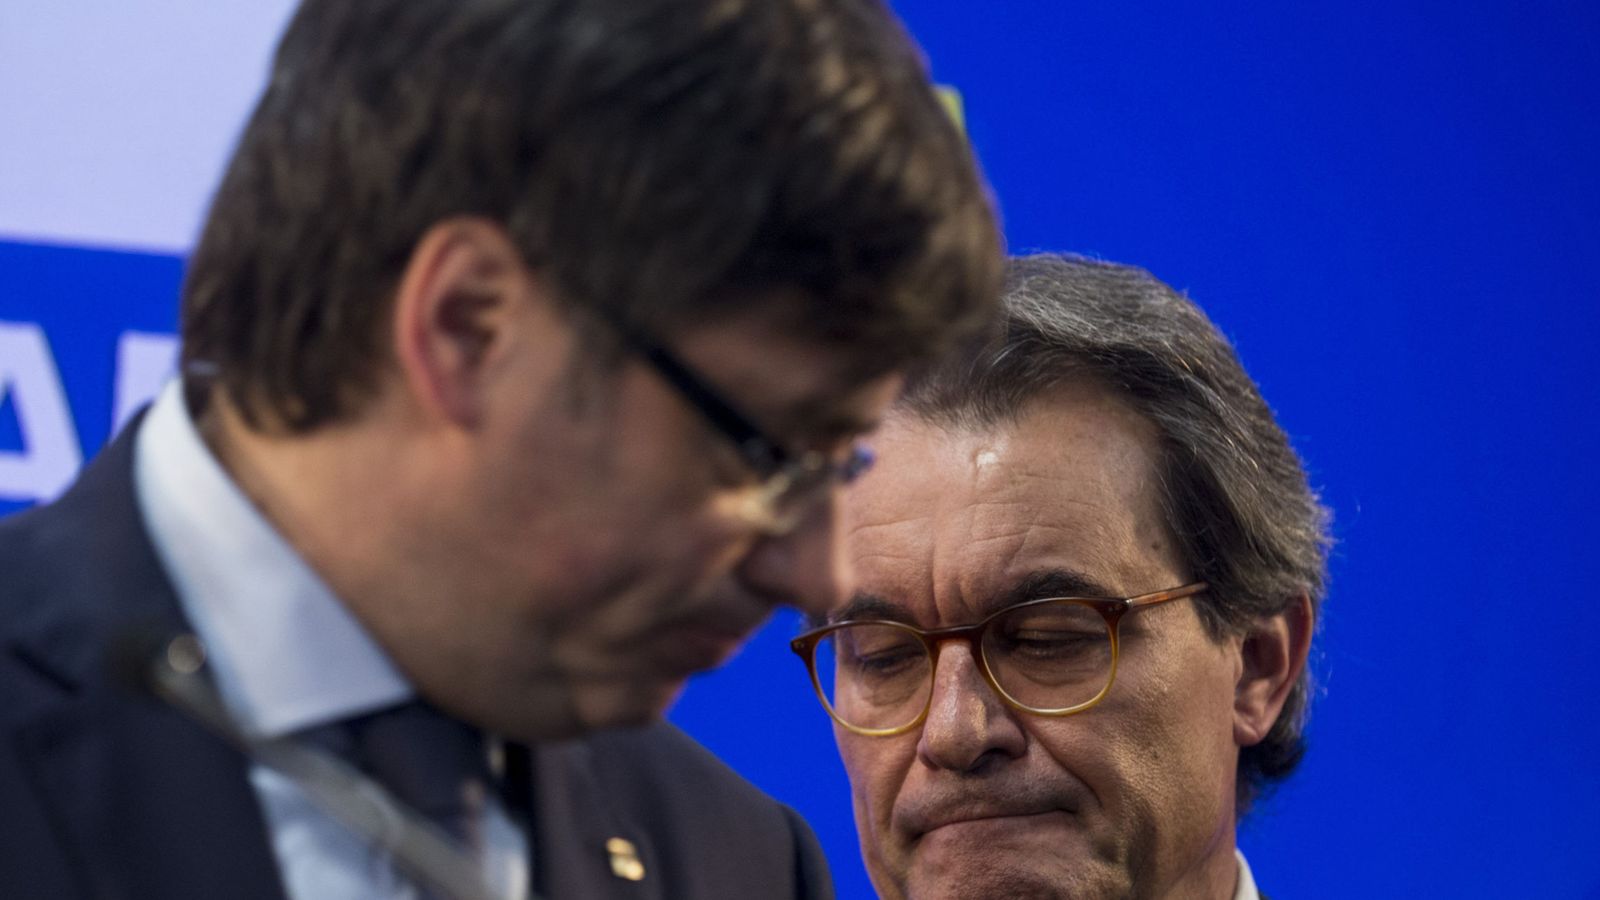 Foto: Carles Puigdemont y Artur Mas. (EFE)